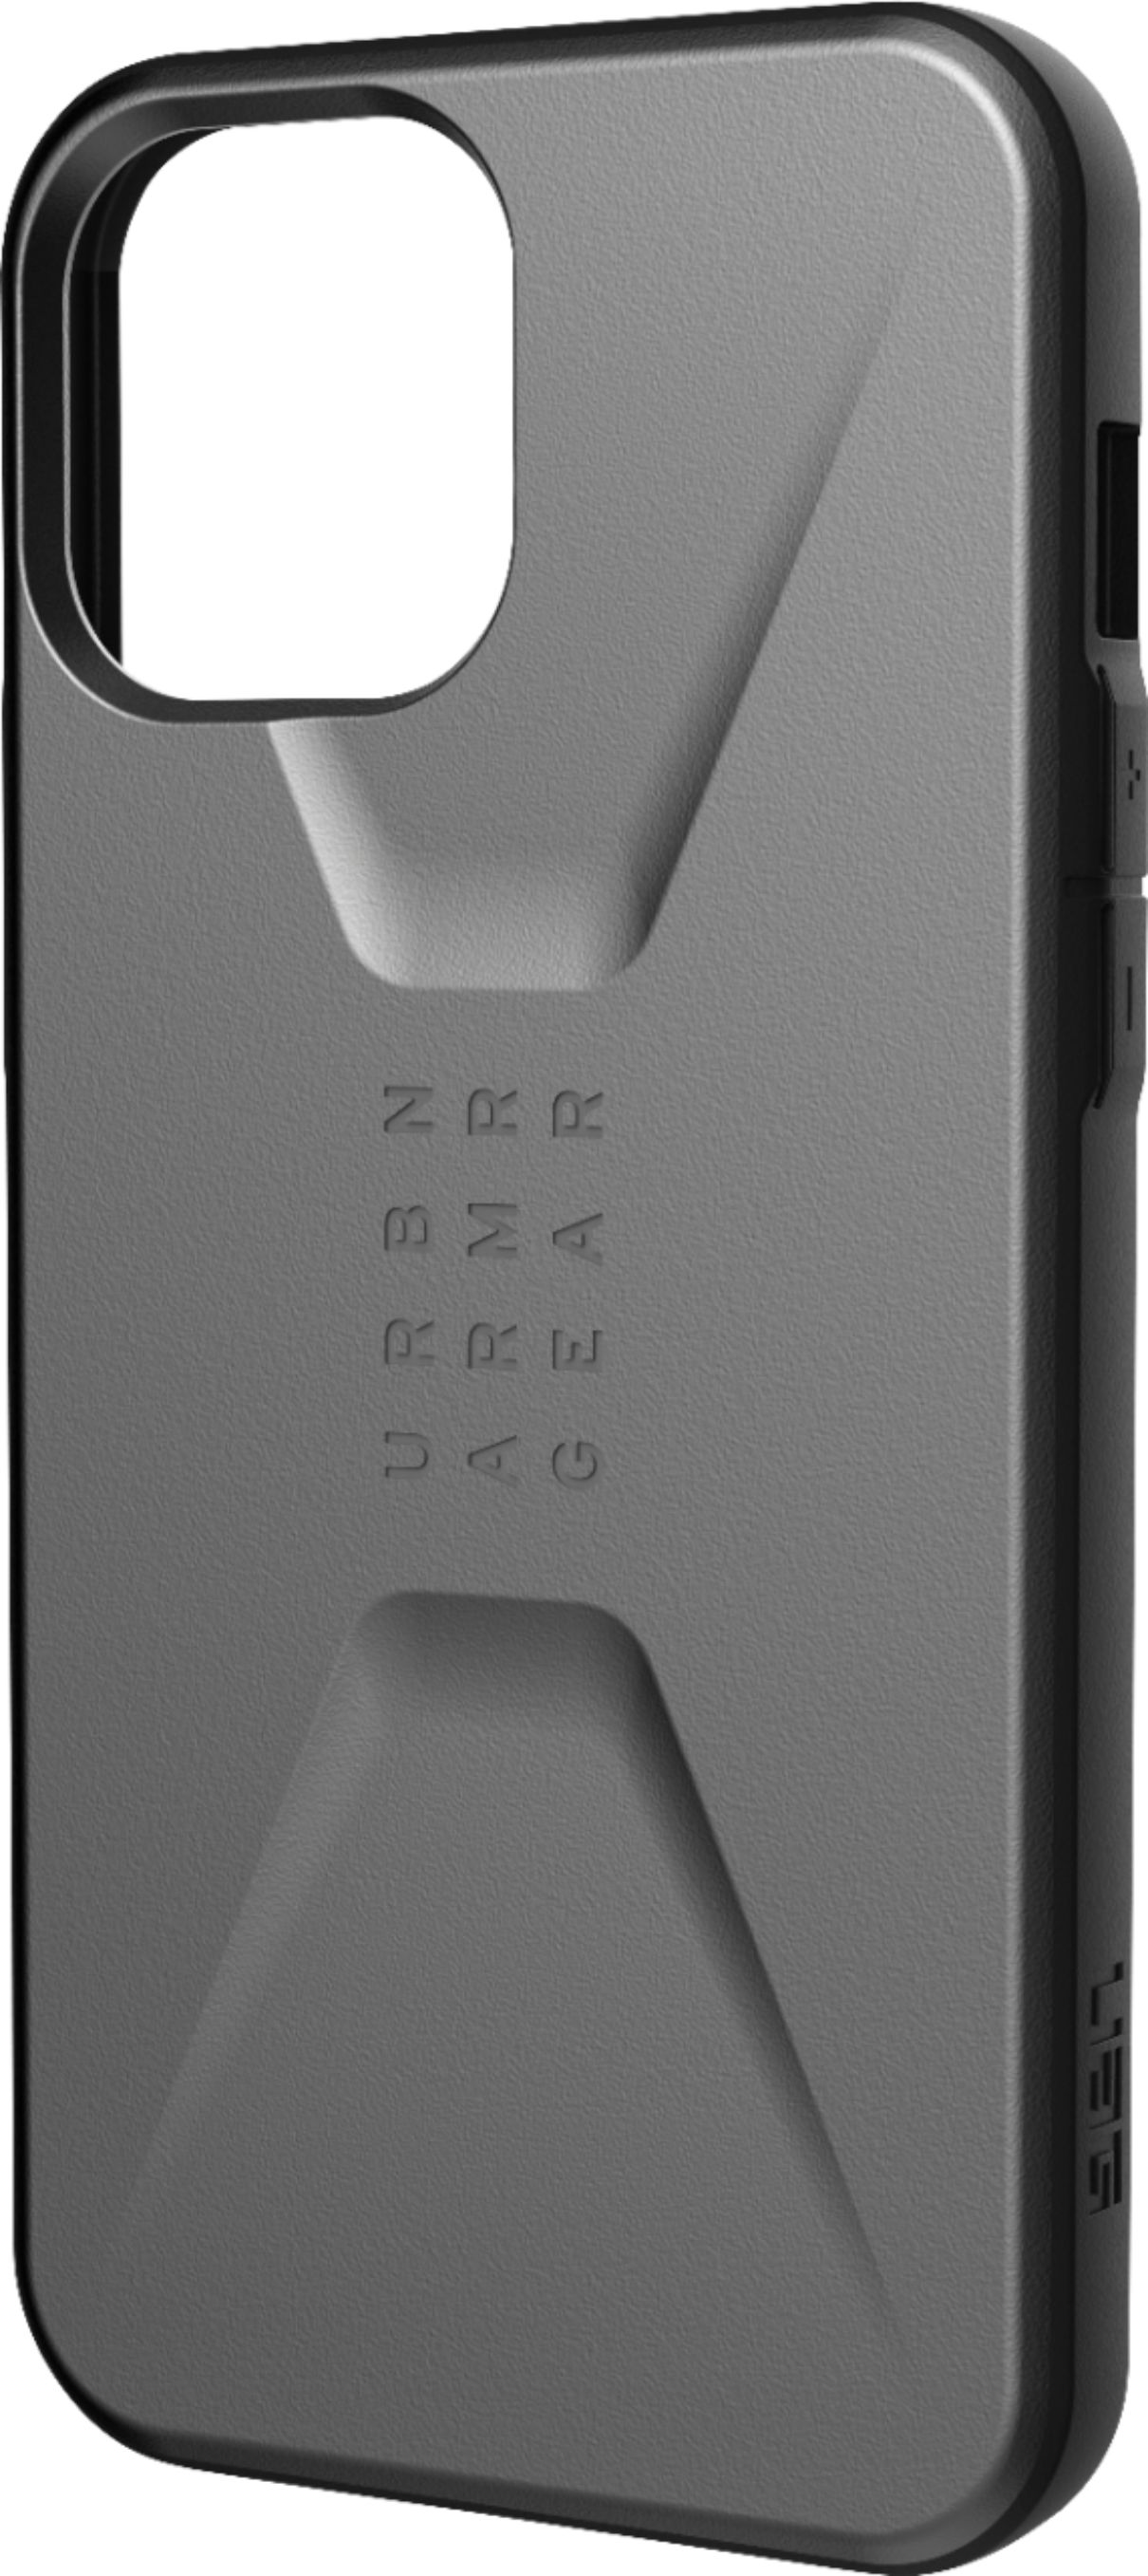 Hermès - iPhone 12 case